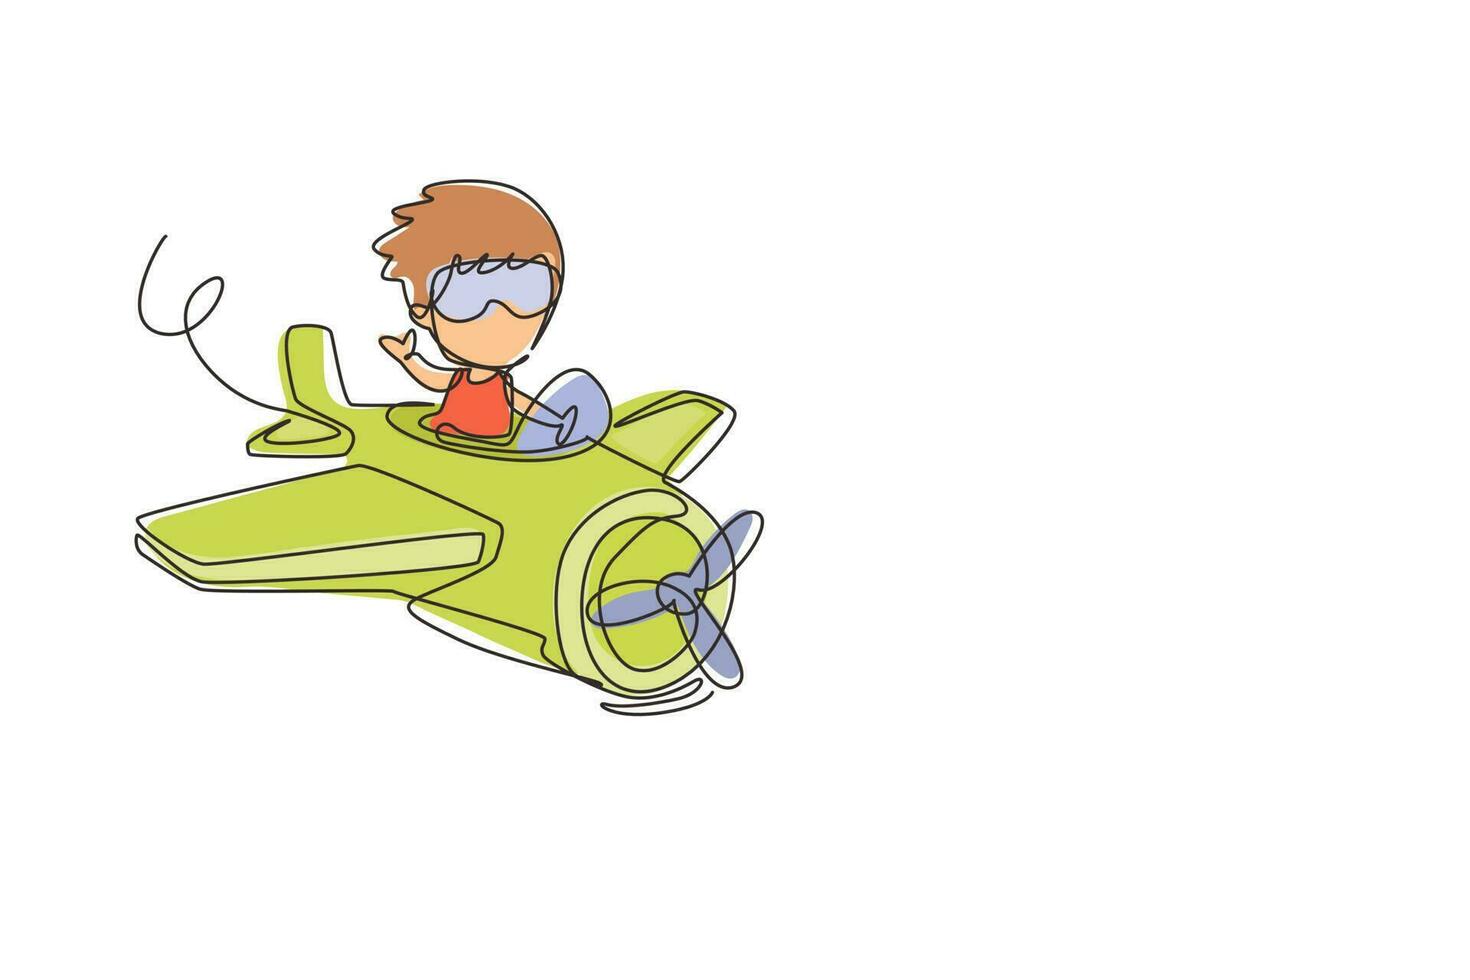 fortlaufende einzeilige zeichnung kleiner junge, der flugzeug betreibt. Kinder fliegen im Flugzeug. Fröhliches lächelndes Kind, das Flugzeug wie ein echter Pilot fliegt und vom Pilotenberuf träumt. einzeiliger Entwurfsvektor vektor